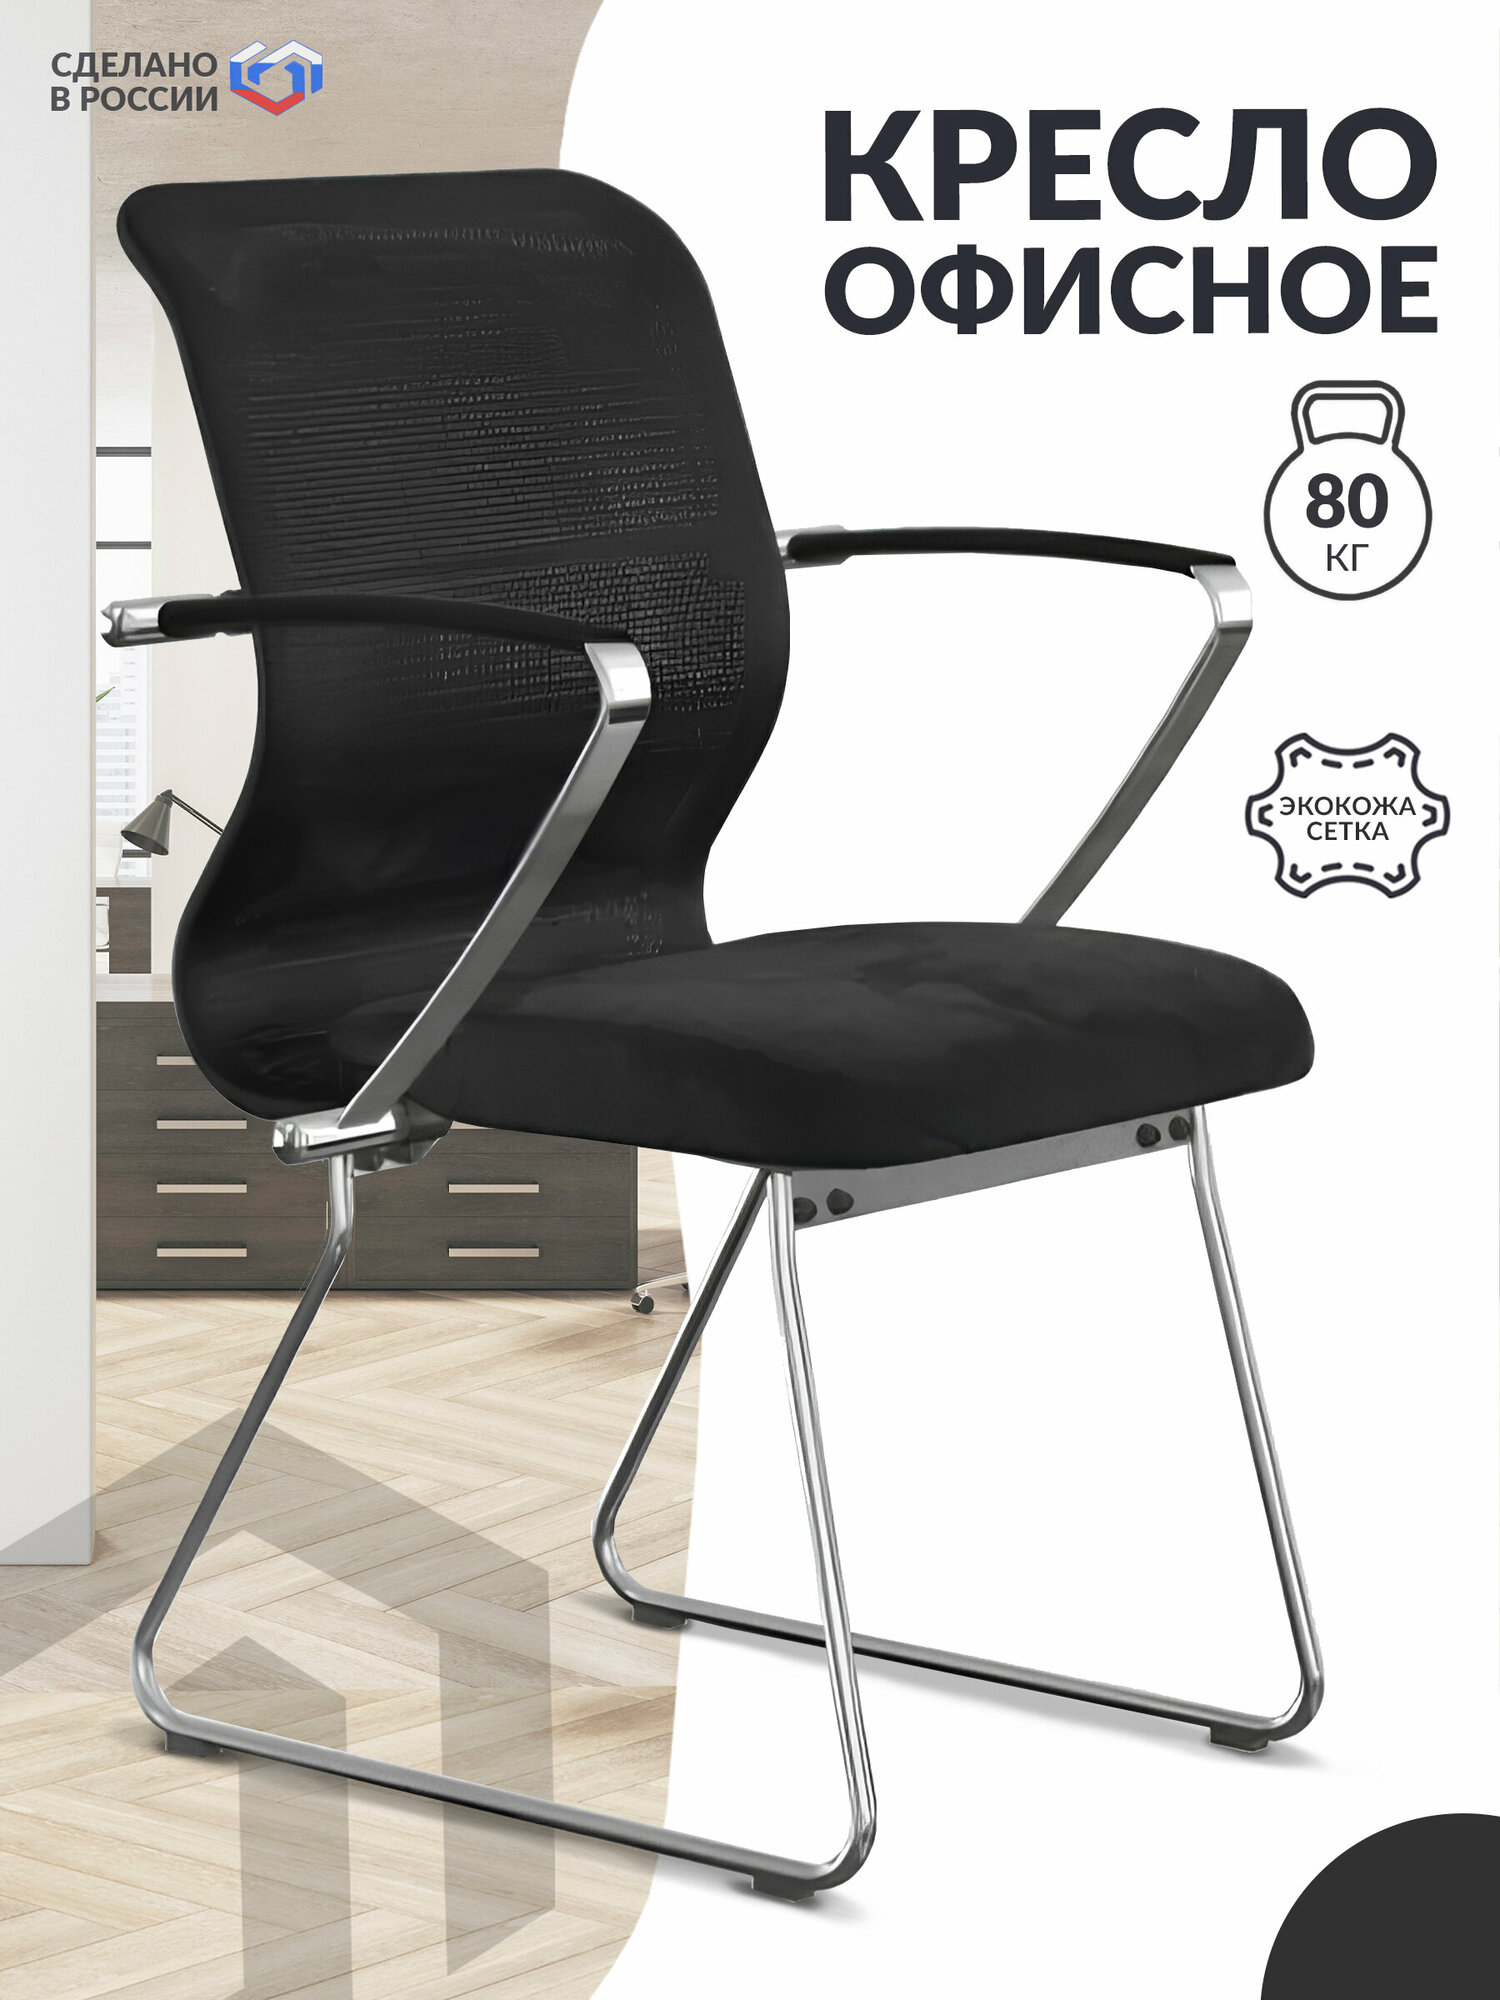 Кресло офисное METTA ErgoLife Sit 8 M4-9K - Extra, черный / Компьютерное кресло для начальника, менеджера, для дома